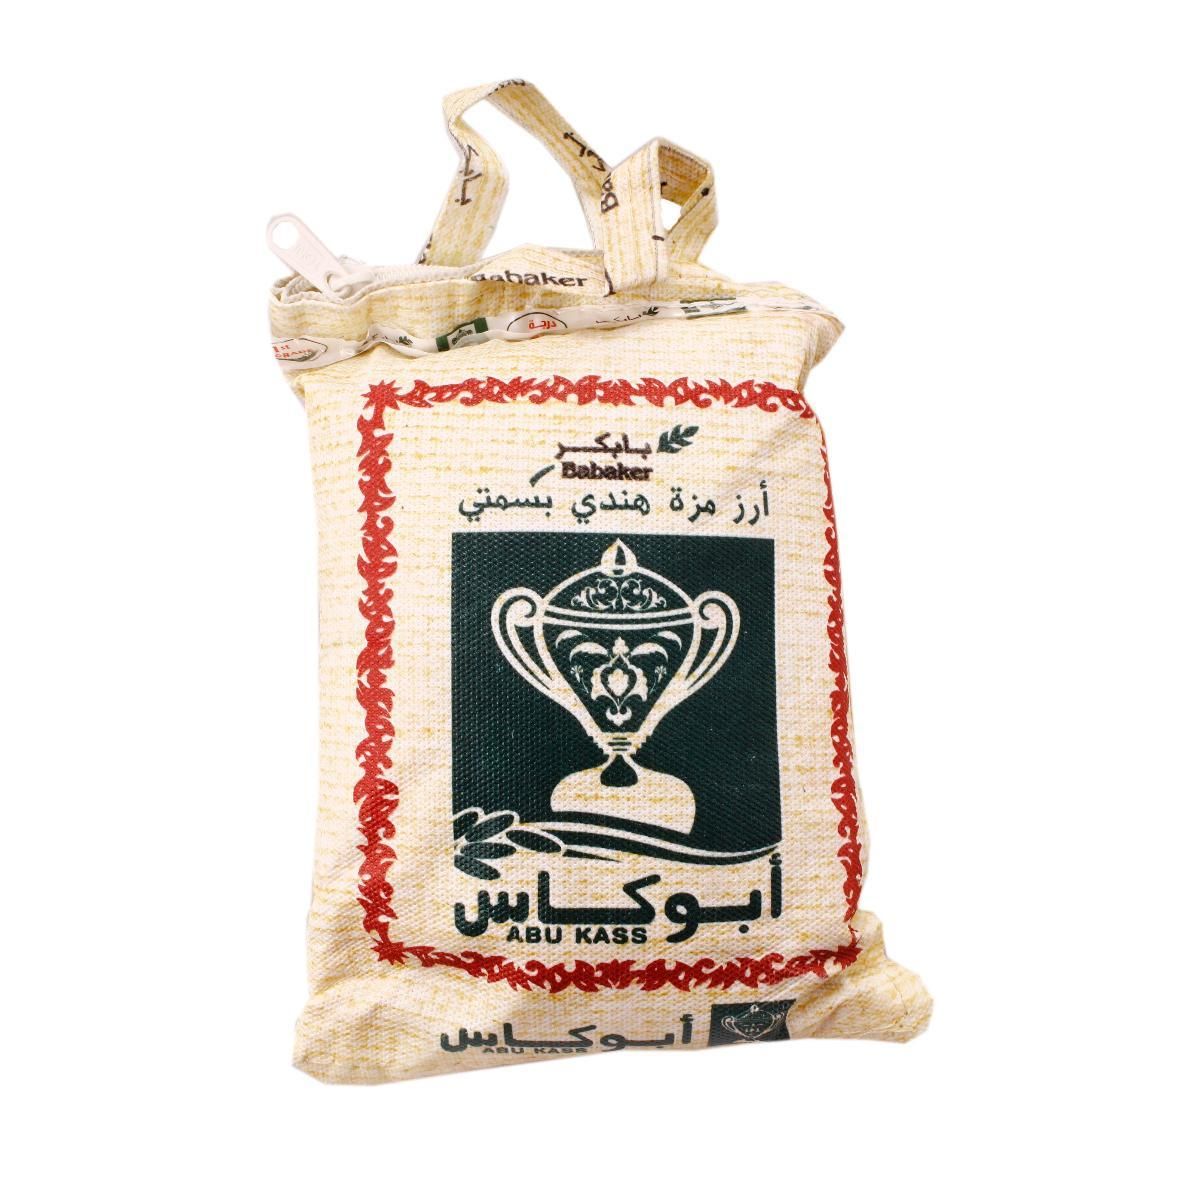 Abu Kass Basmati Rice 1kg